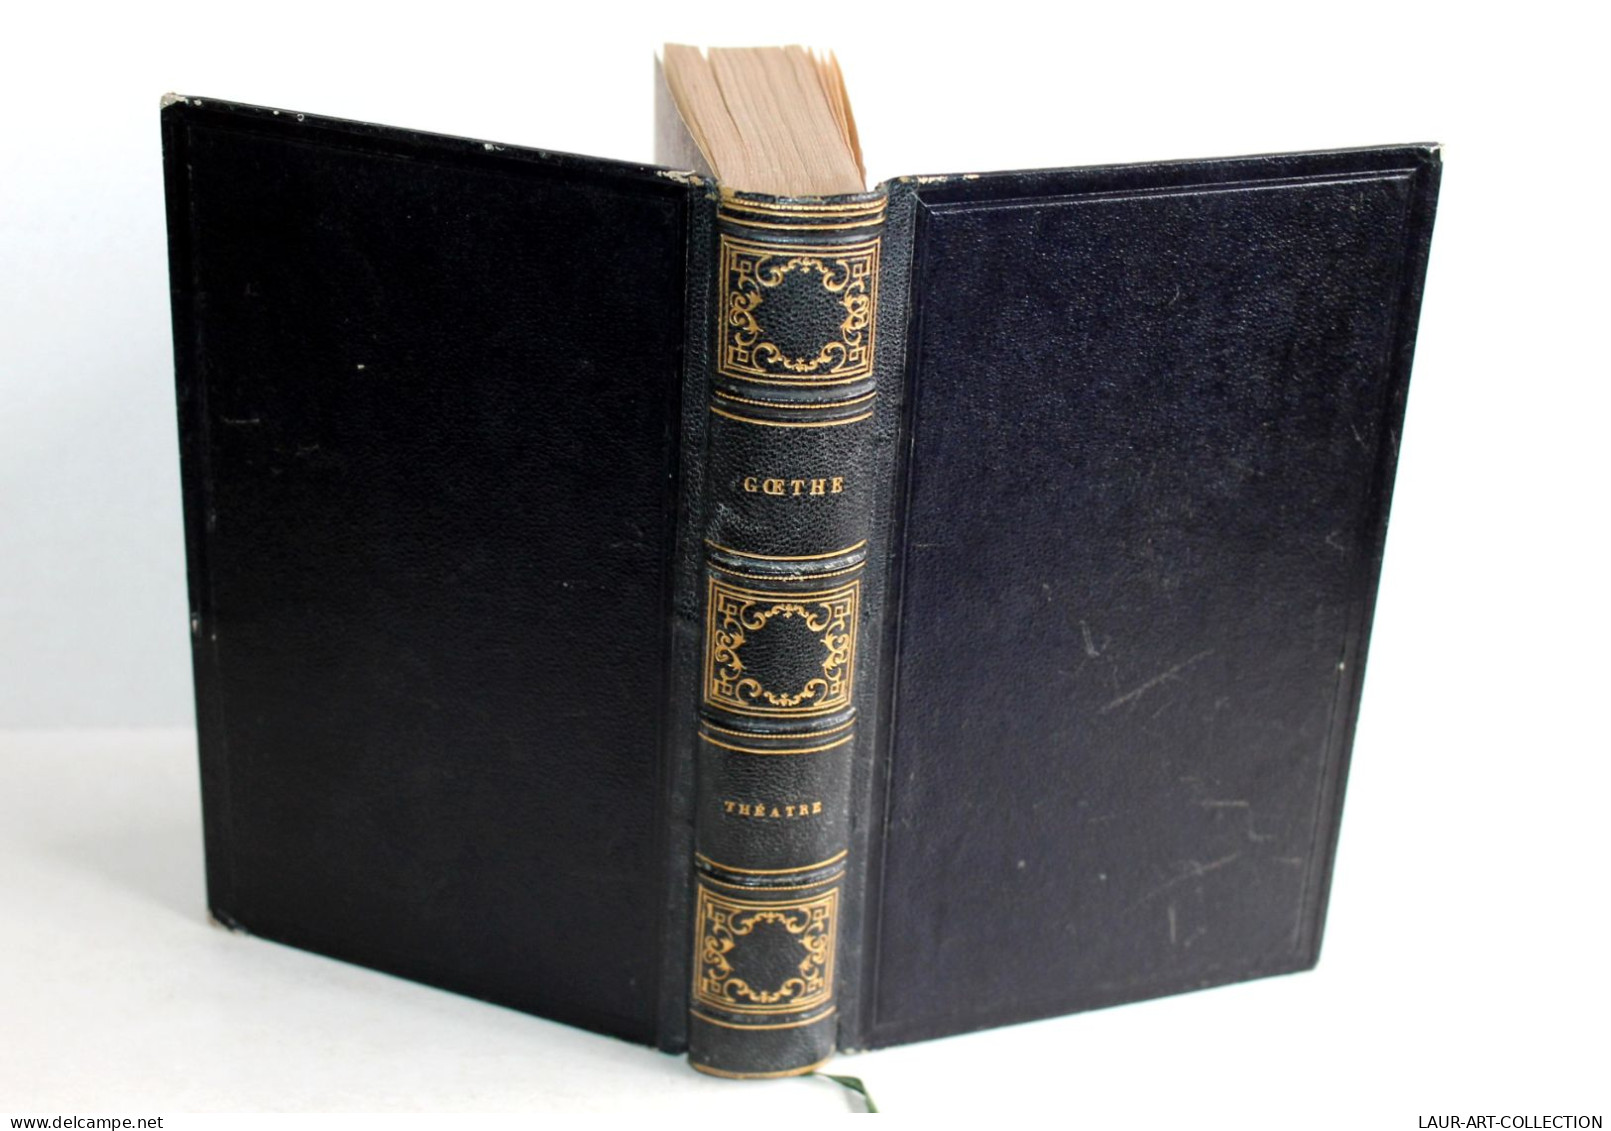 THEATRE DE GOETHE, TRADUCTION NOUVELLE Par M.X. MARMIER 1853 CHARPENTIER EDITEUR / ANCIEN LIVRE XIXe SIECLE (2603.9) - French Authors